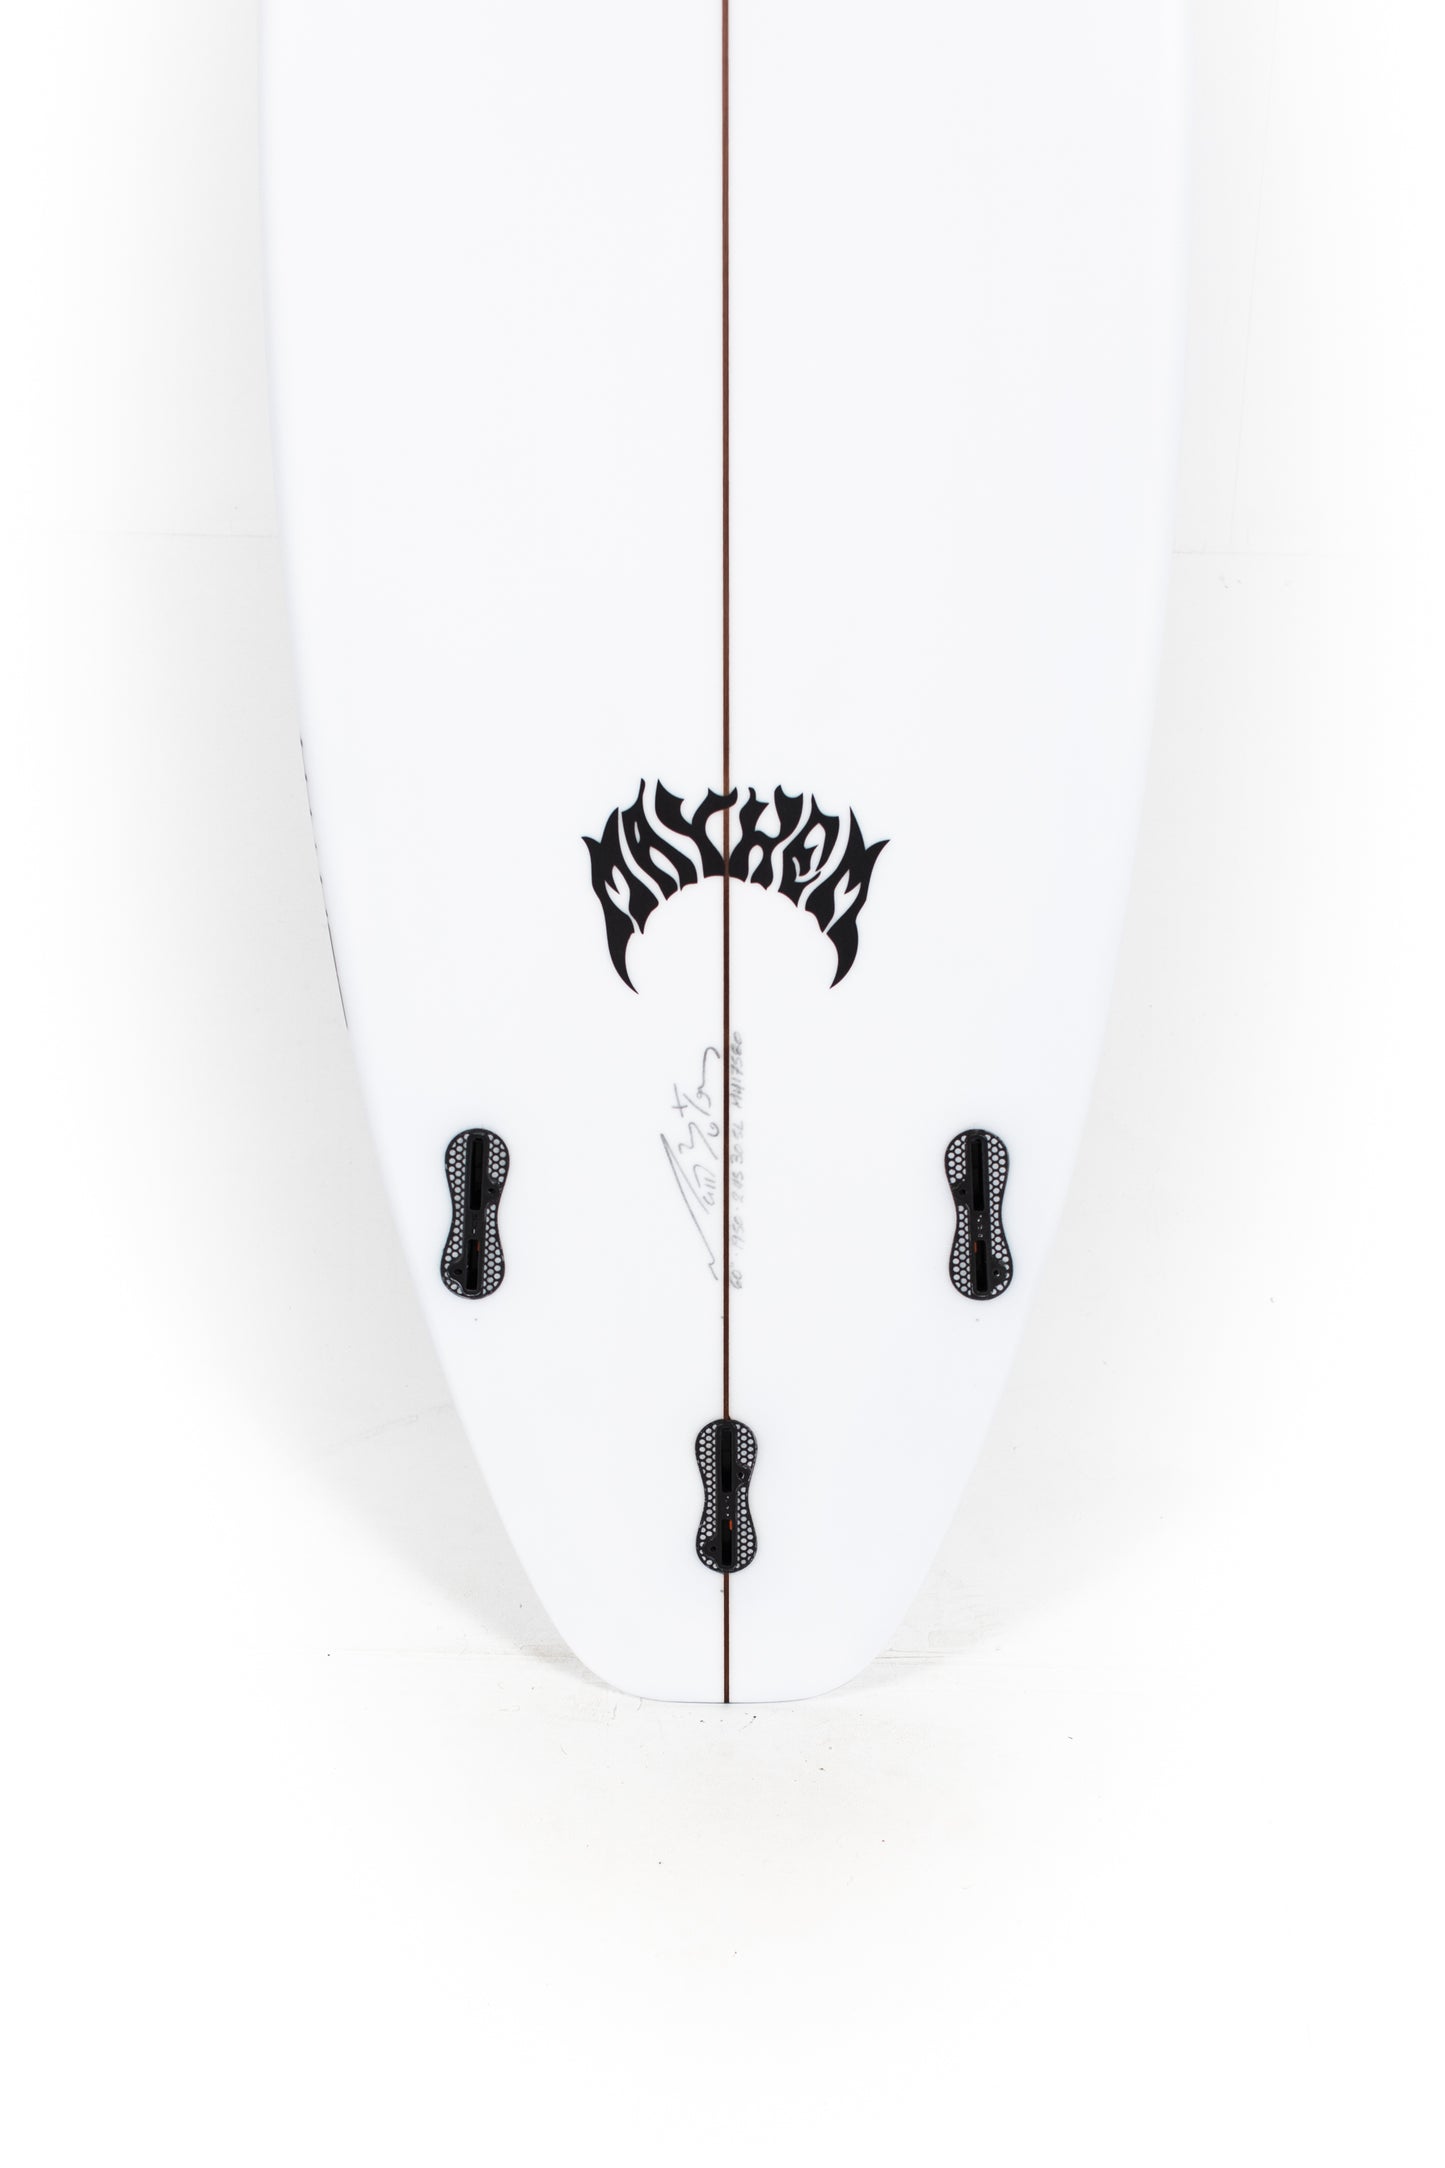 
                  
                    Pukas Surf Shop - Lost Surfboard - 3.0_STUB DRIVER by Matt Biolos - 6’0” x 19.5" x 2.45" - 30.5L - MH17580
                  
                